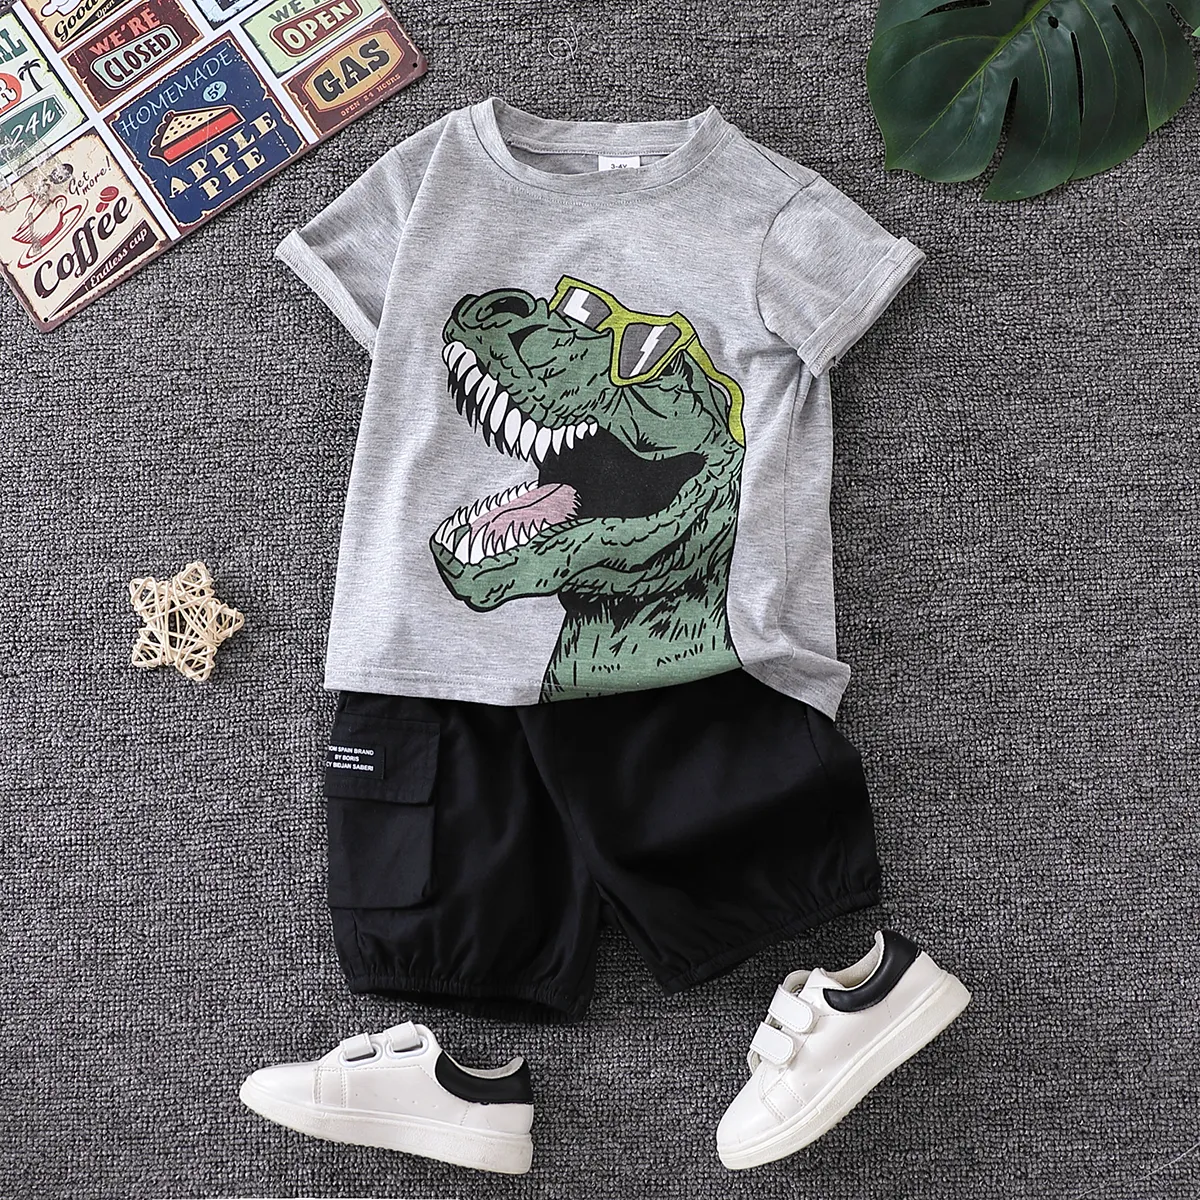 2pcs Toddler Boy Playful Dinosaur Print Tee & Cargo Shorts Set Light Grey big image 1